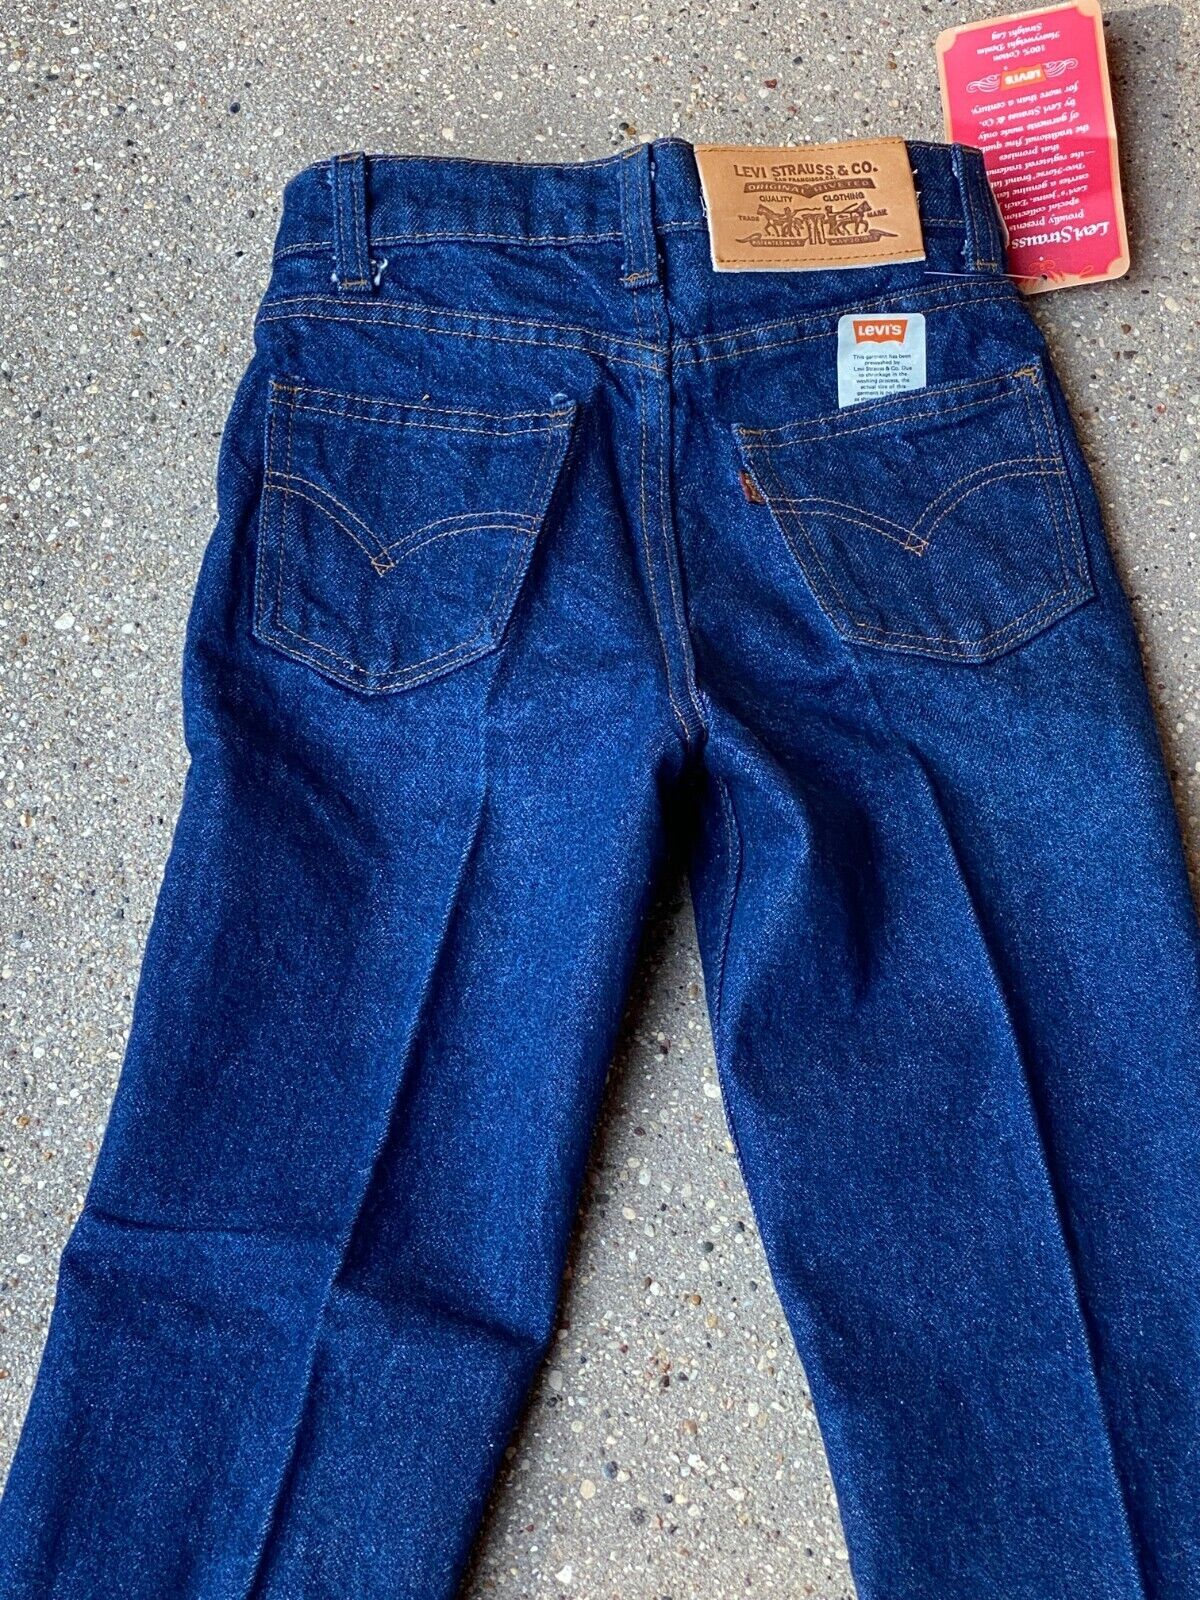 Levi's 309-0216 Student Fit Straight Leg 1982 Jeans 25 1/2w X 24 1/2L TALON New - $47.52